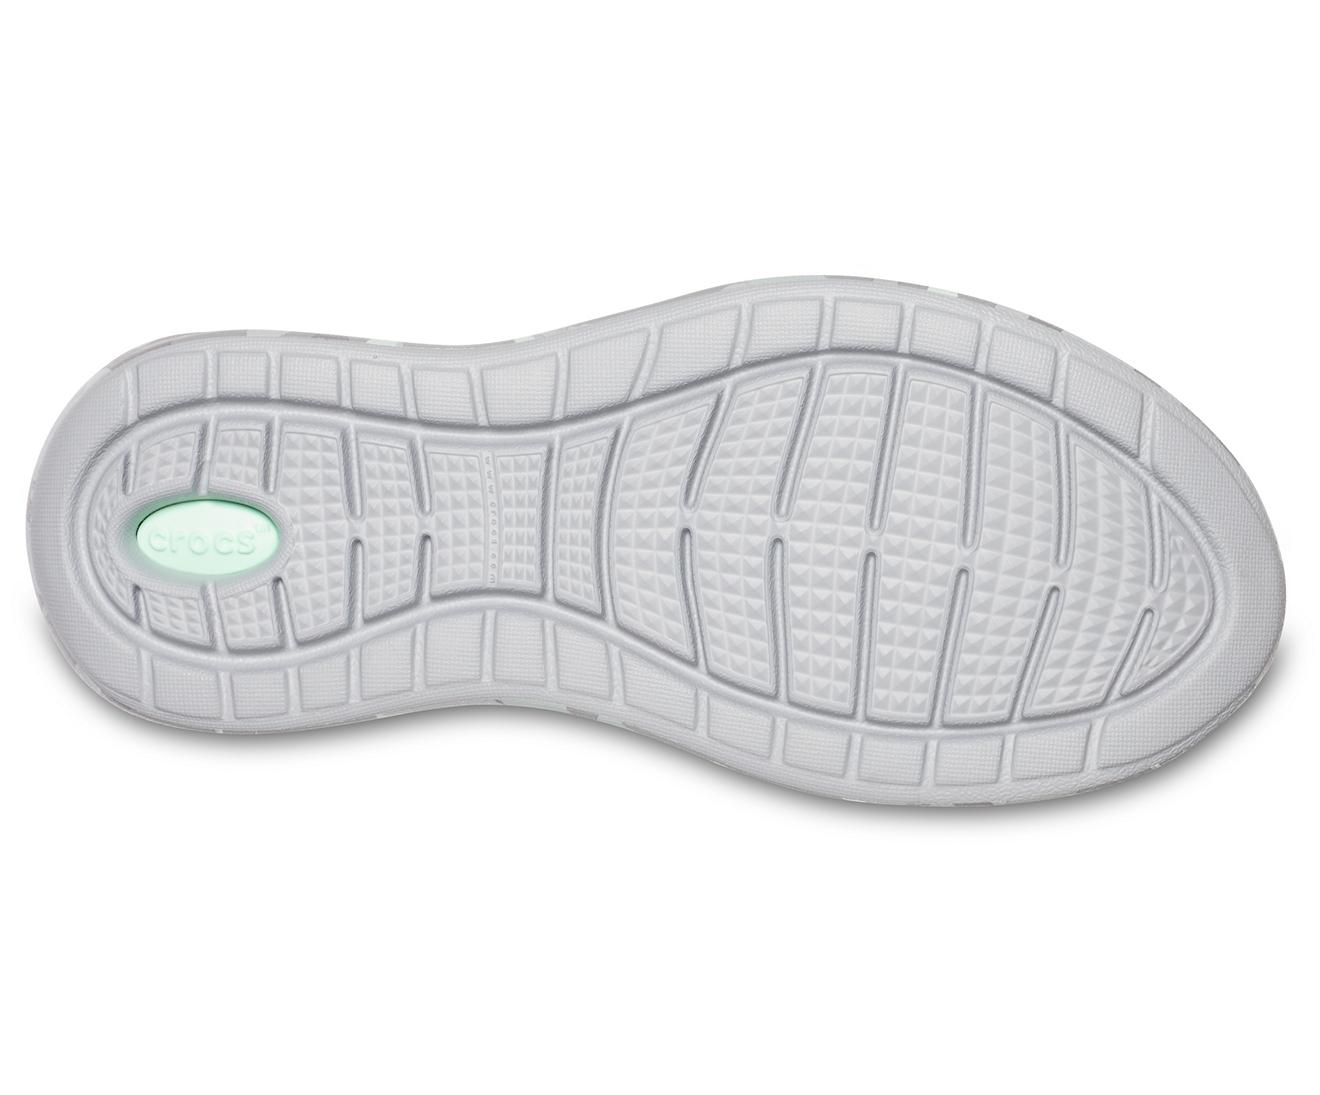 croc camo tennis shoes